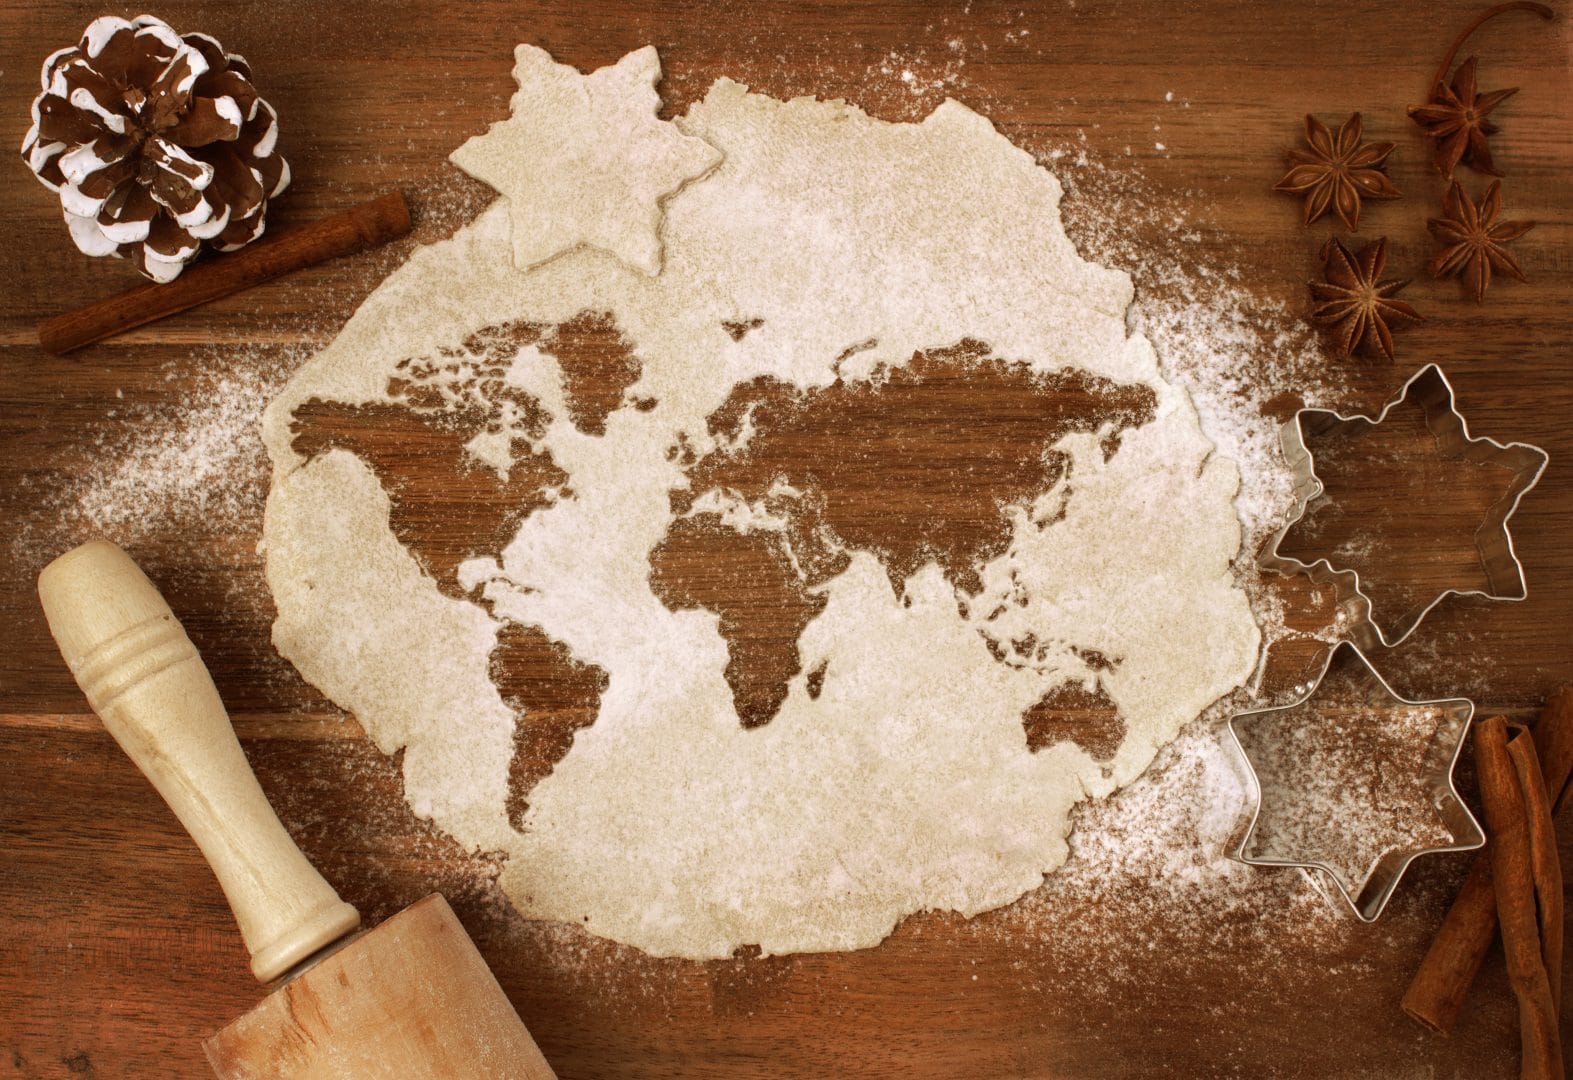 Panaderia y Pasteleria artesanal para el mercado internacional